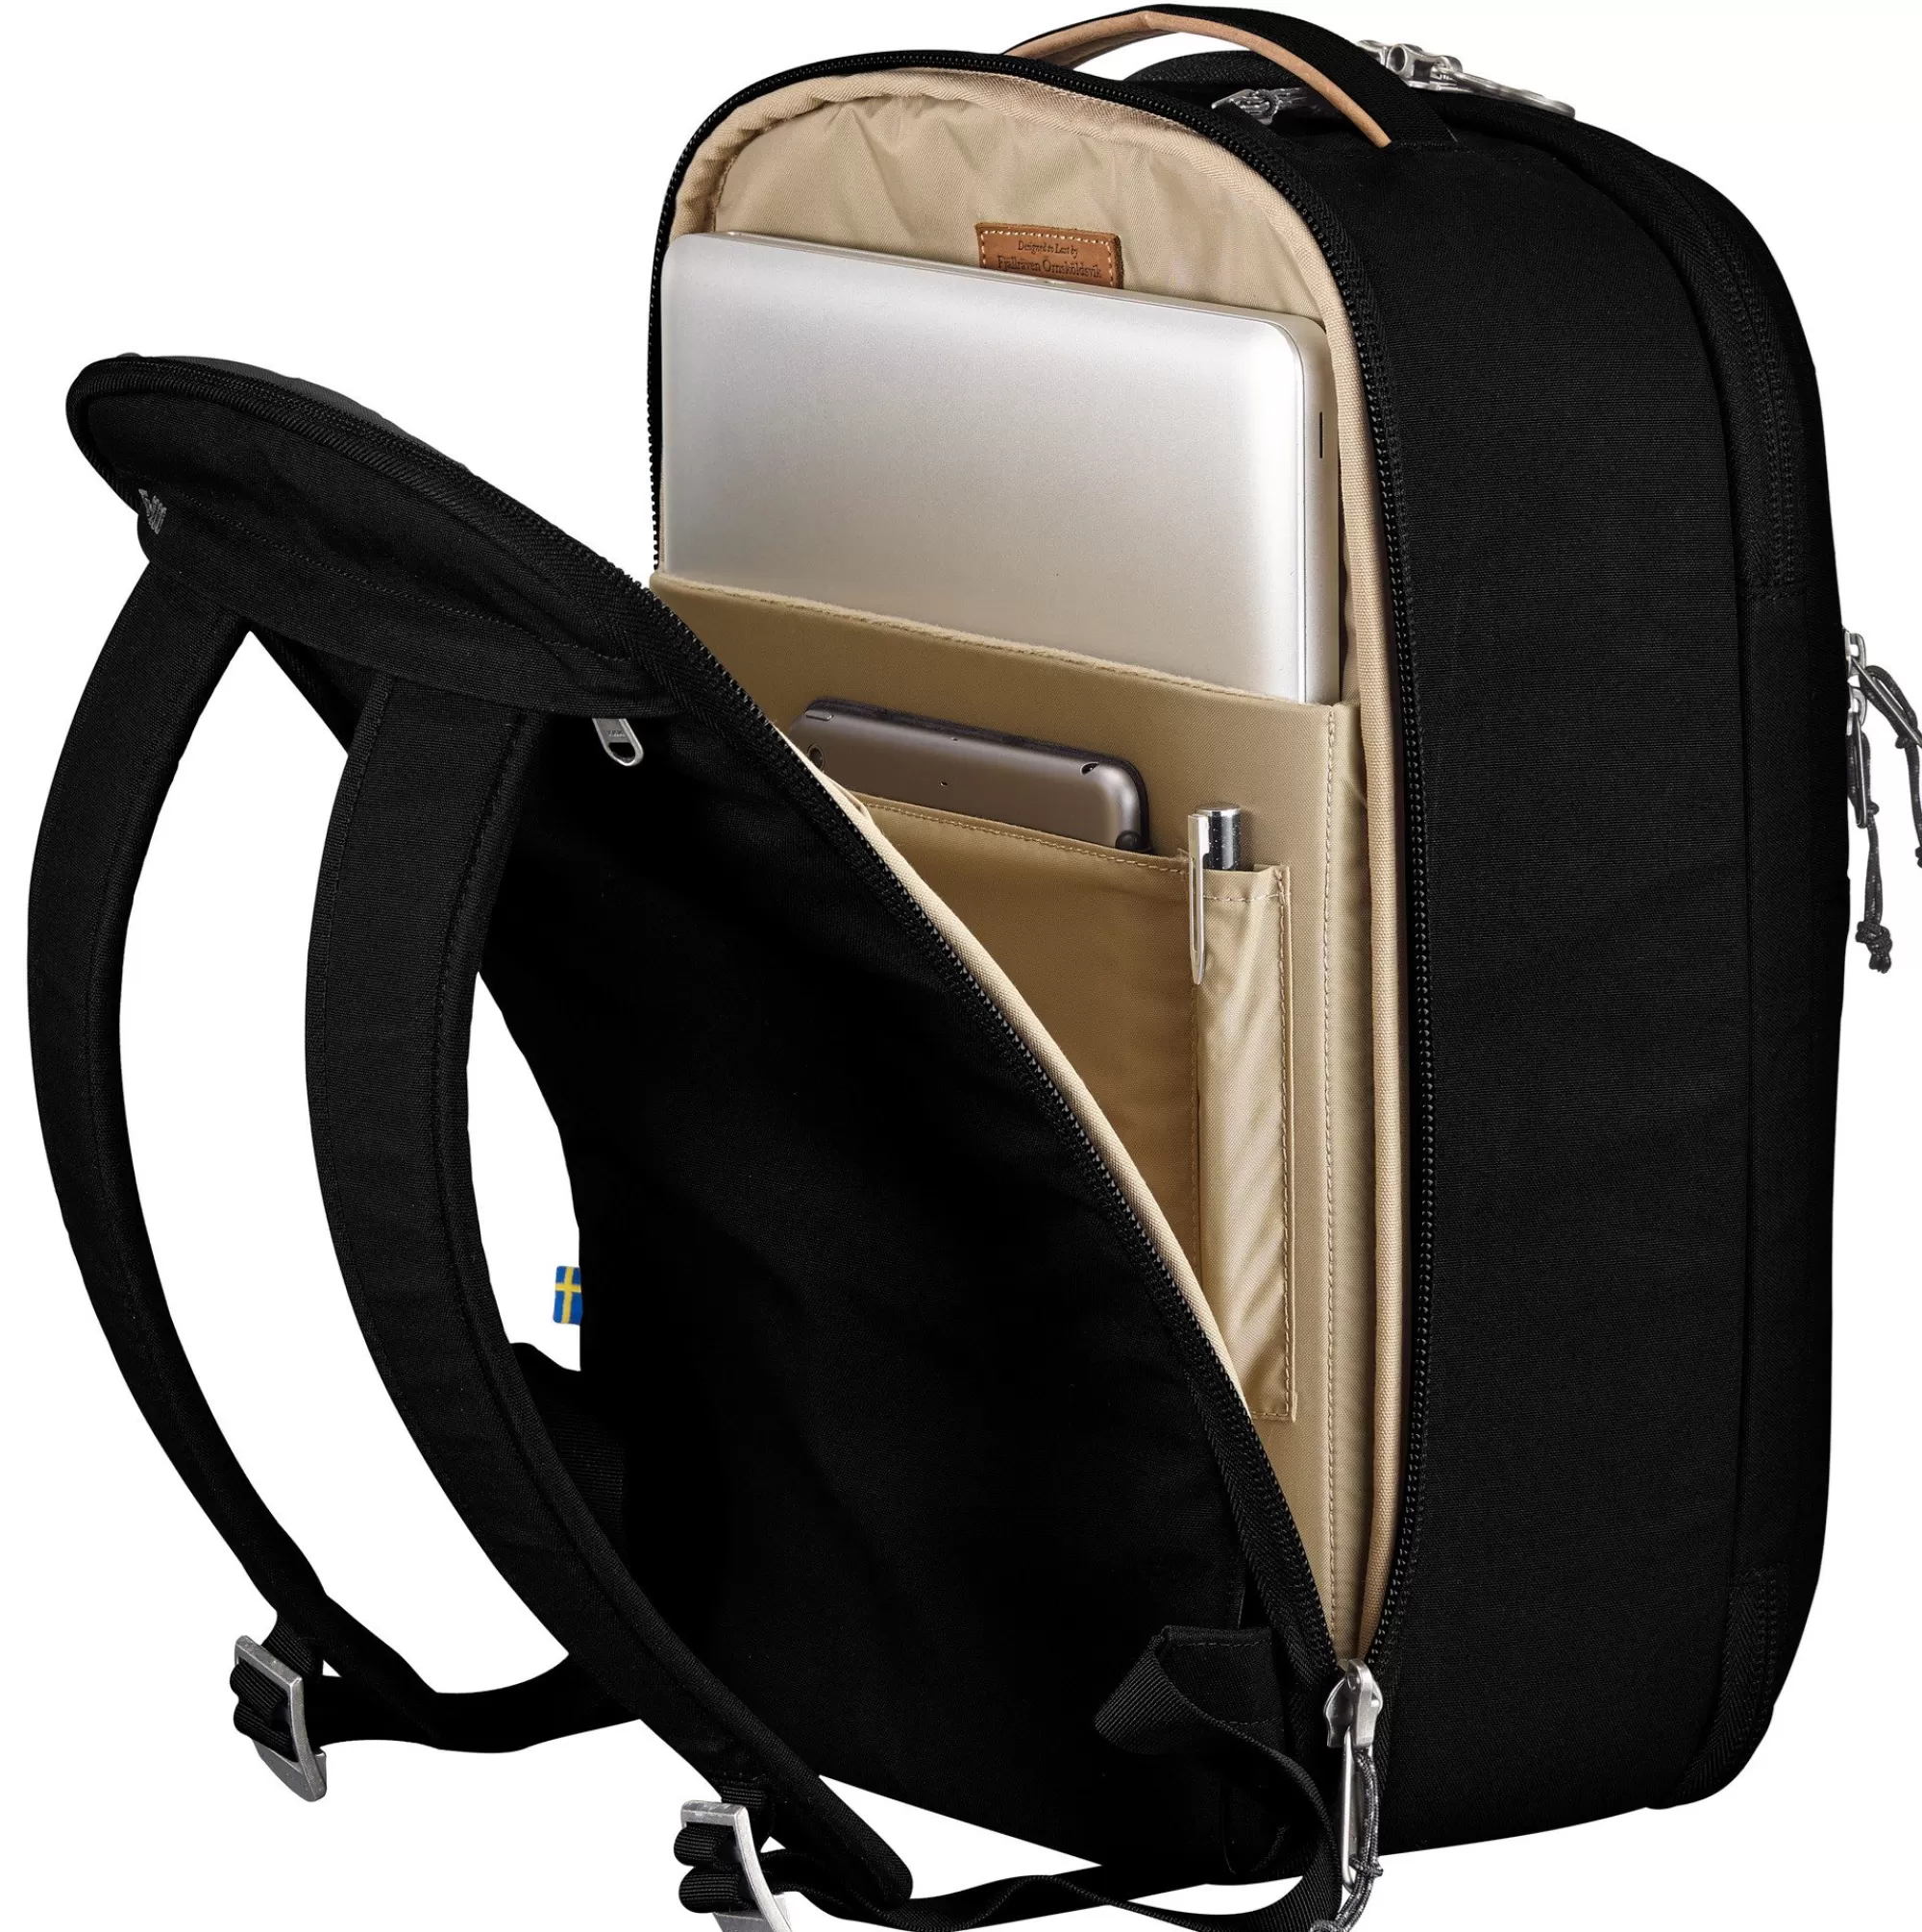 Backpacks & bags*WOMEN Fjallraven Travel Pack Small Black